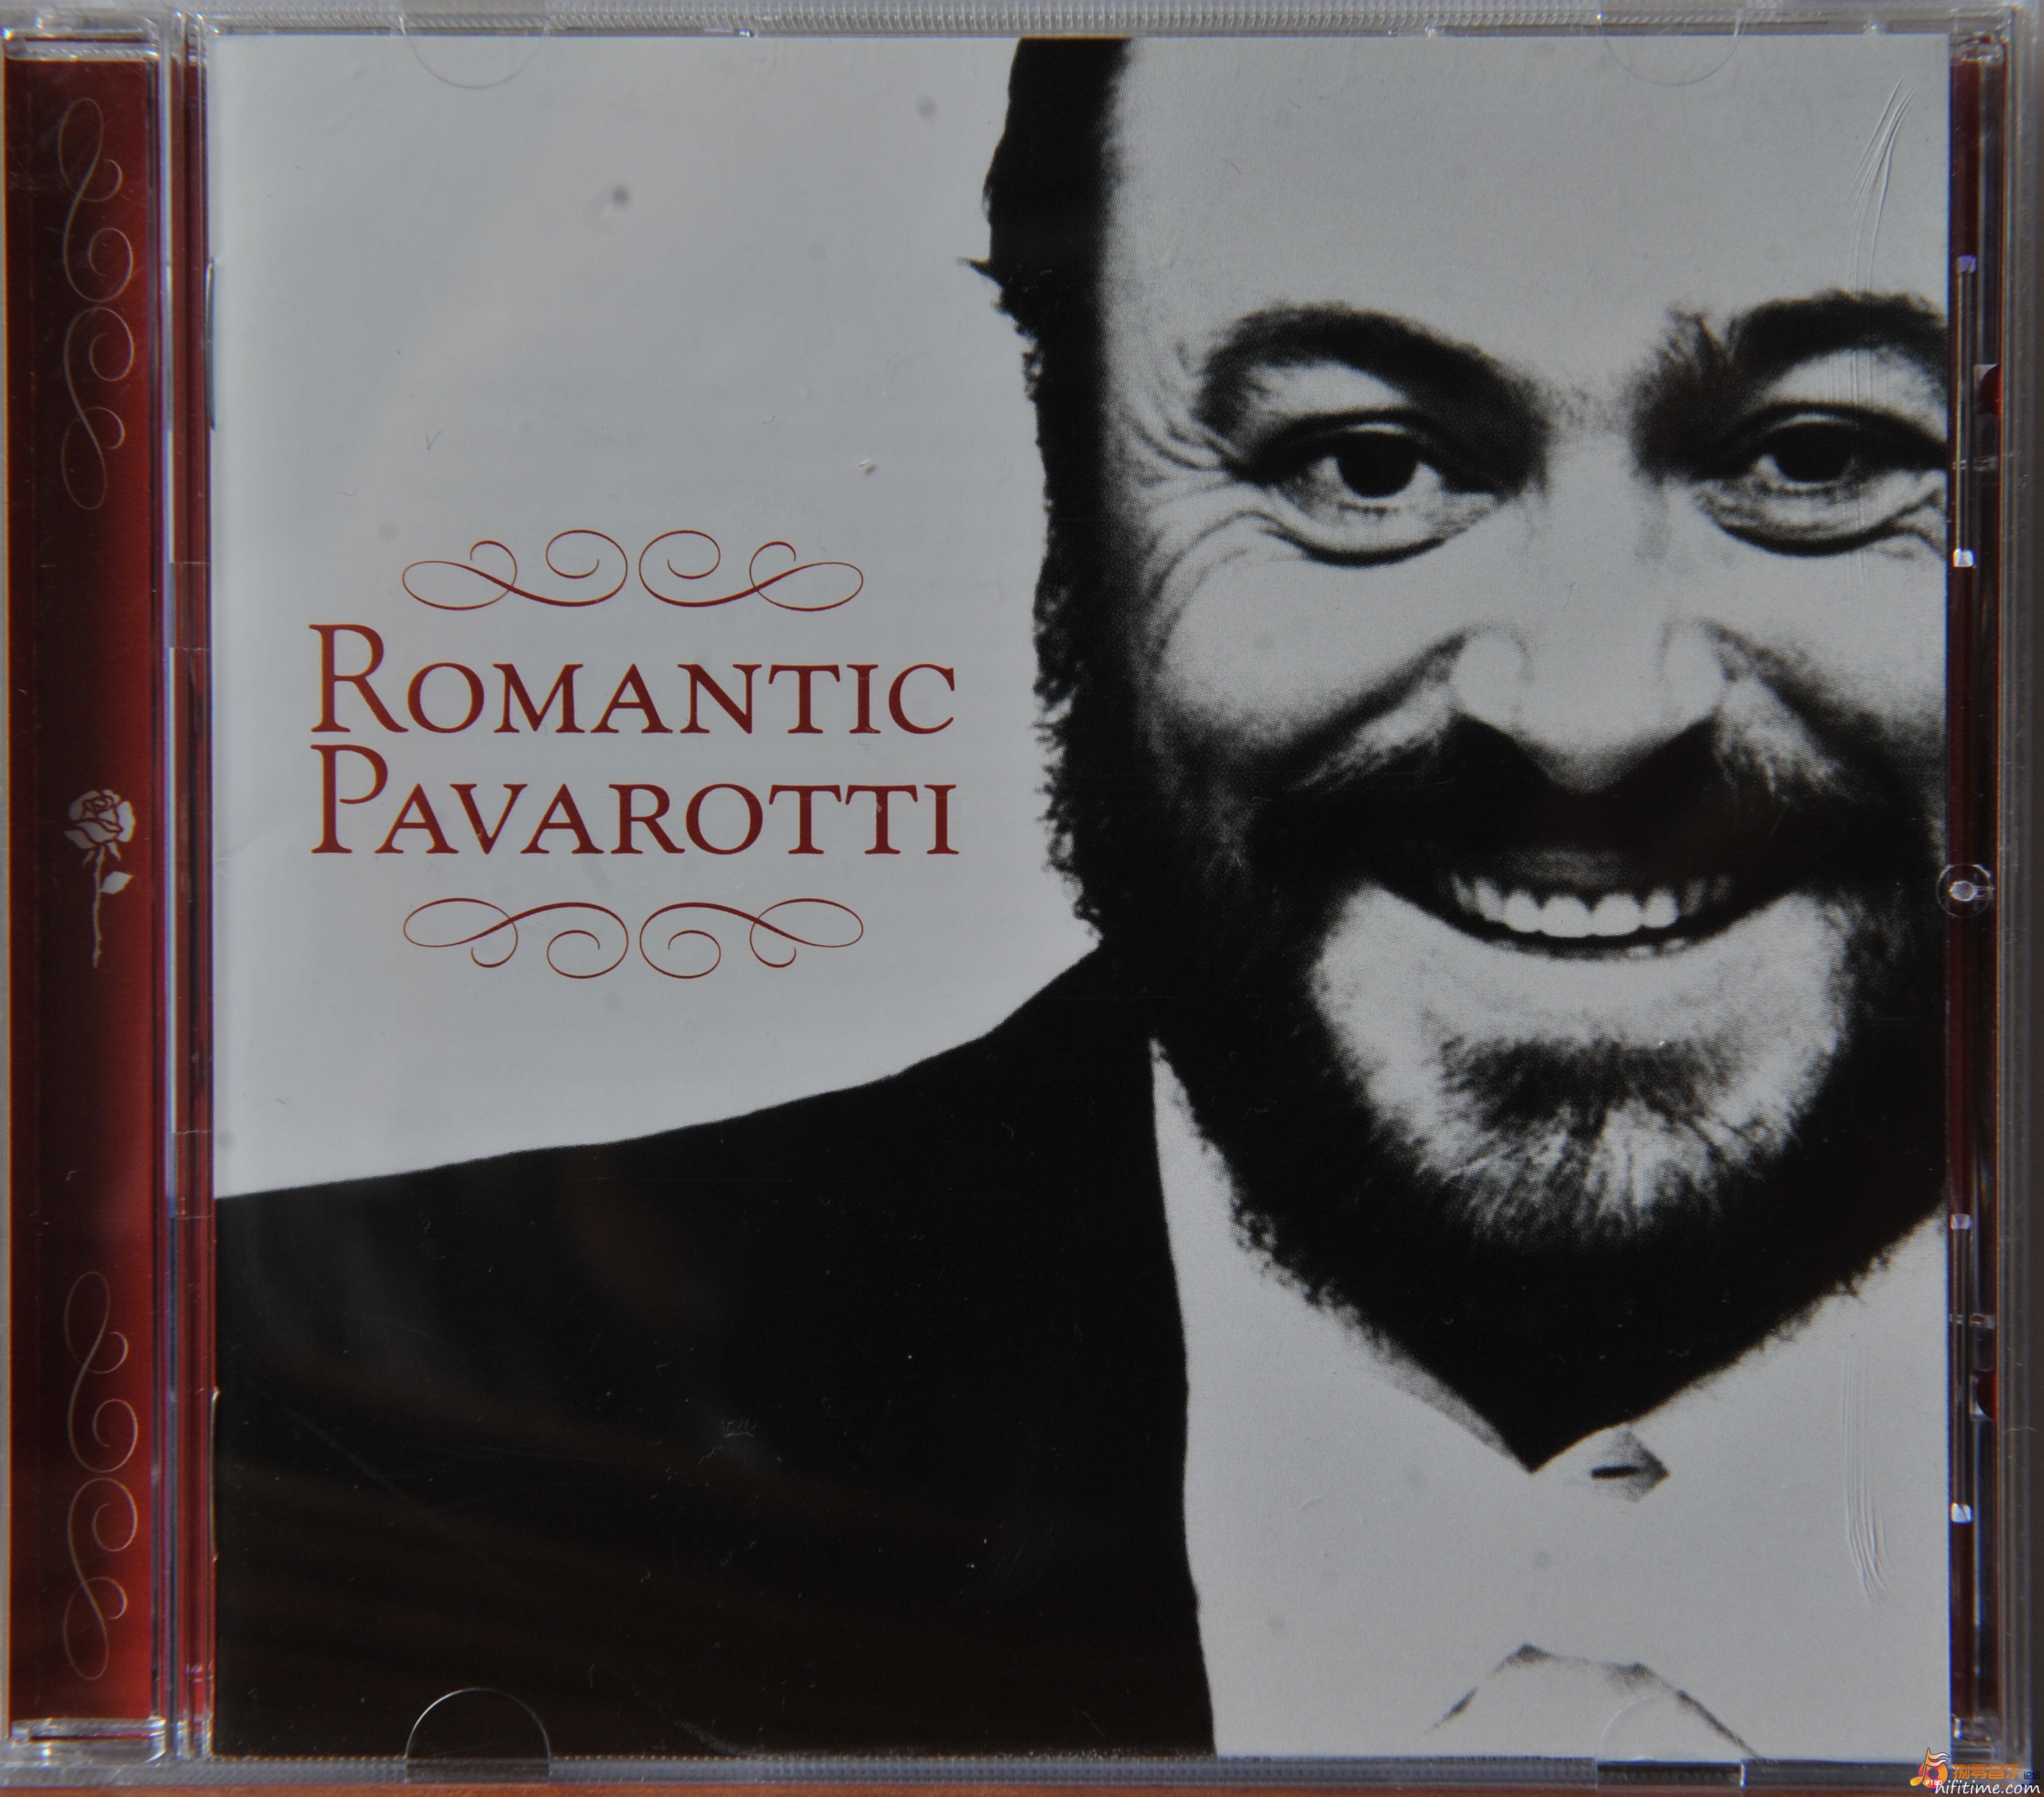 (原抓)RCA红印-帕瓦罗蒂浪漫歌曲集(WAV镜像